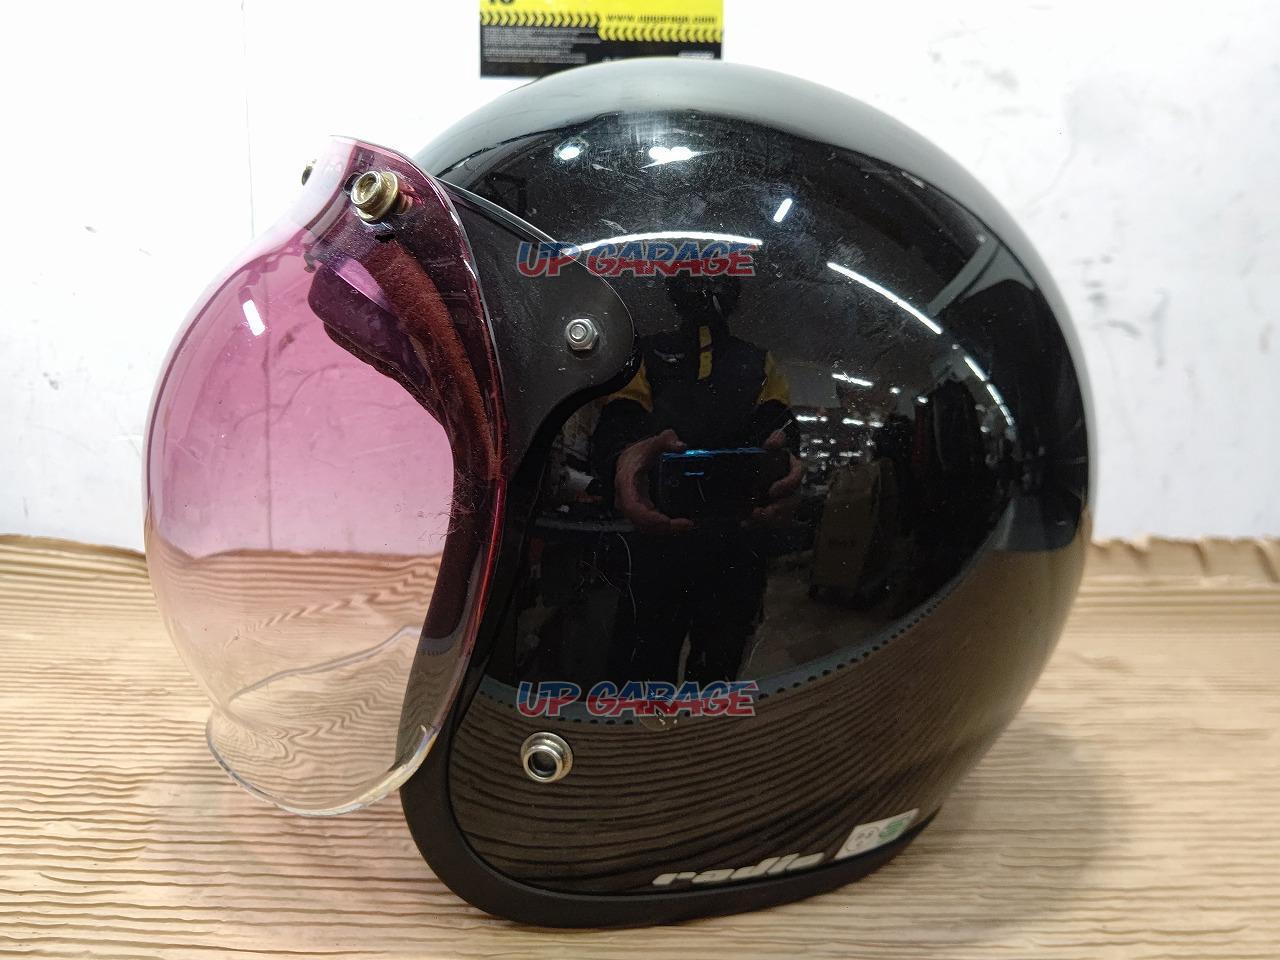 OGK(オージーケー) Radic SpeedMax ジェットヘルメット サイズ:L/XL